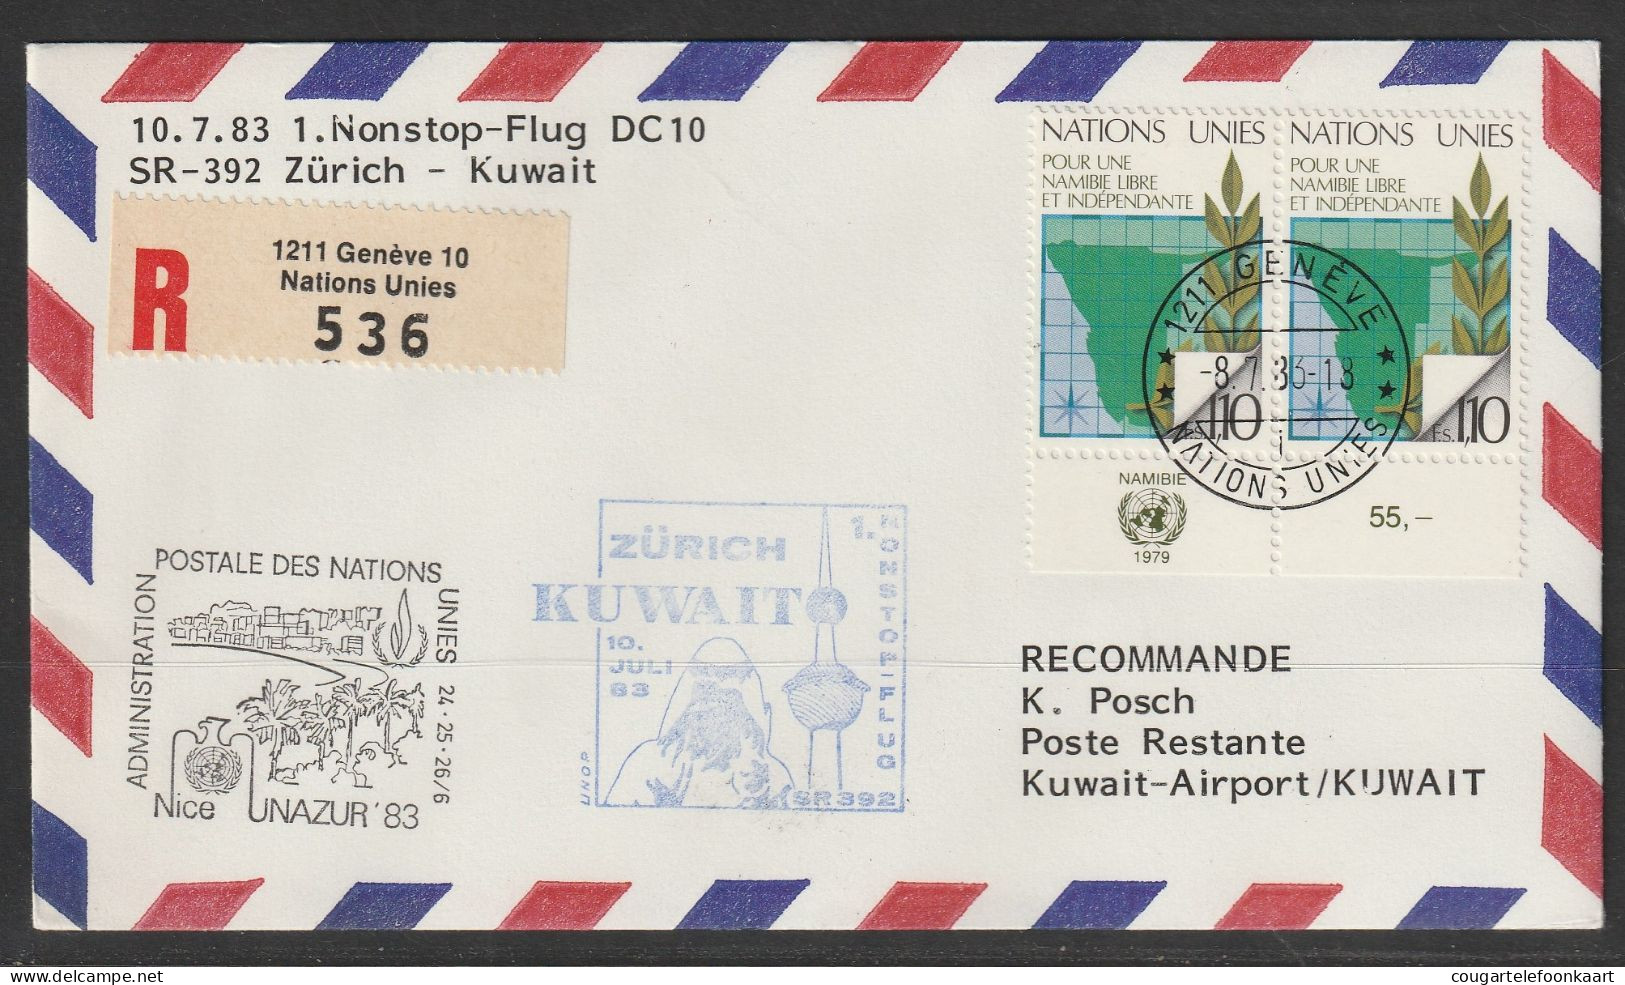 1983, Swissair, Erstflug, Genf UN - Zürich - Kuwait - First Flight Covers